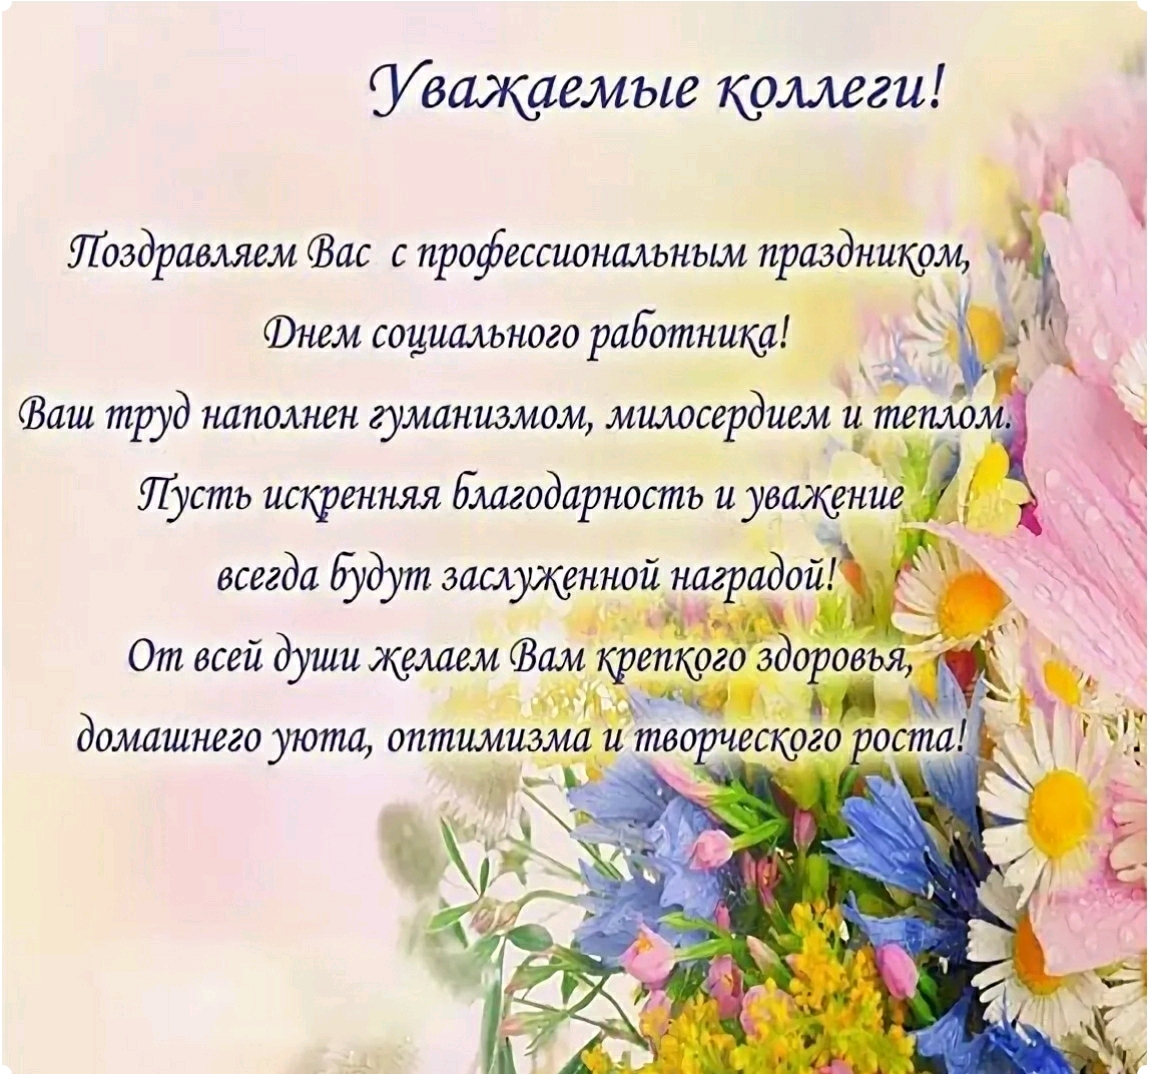 Поздравления От Кадров Коллективу